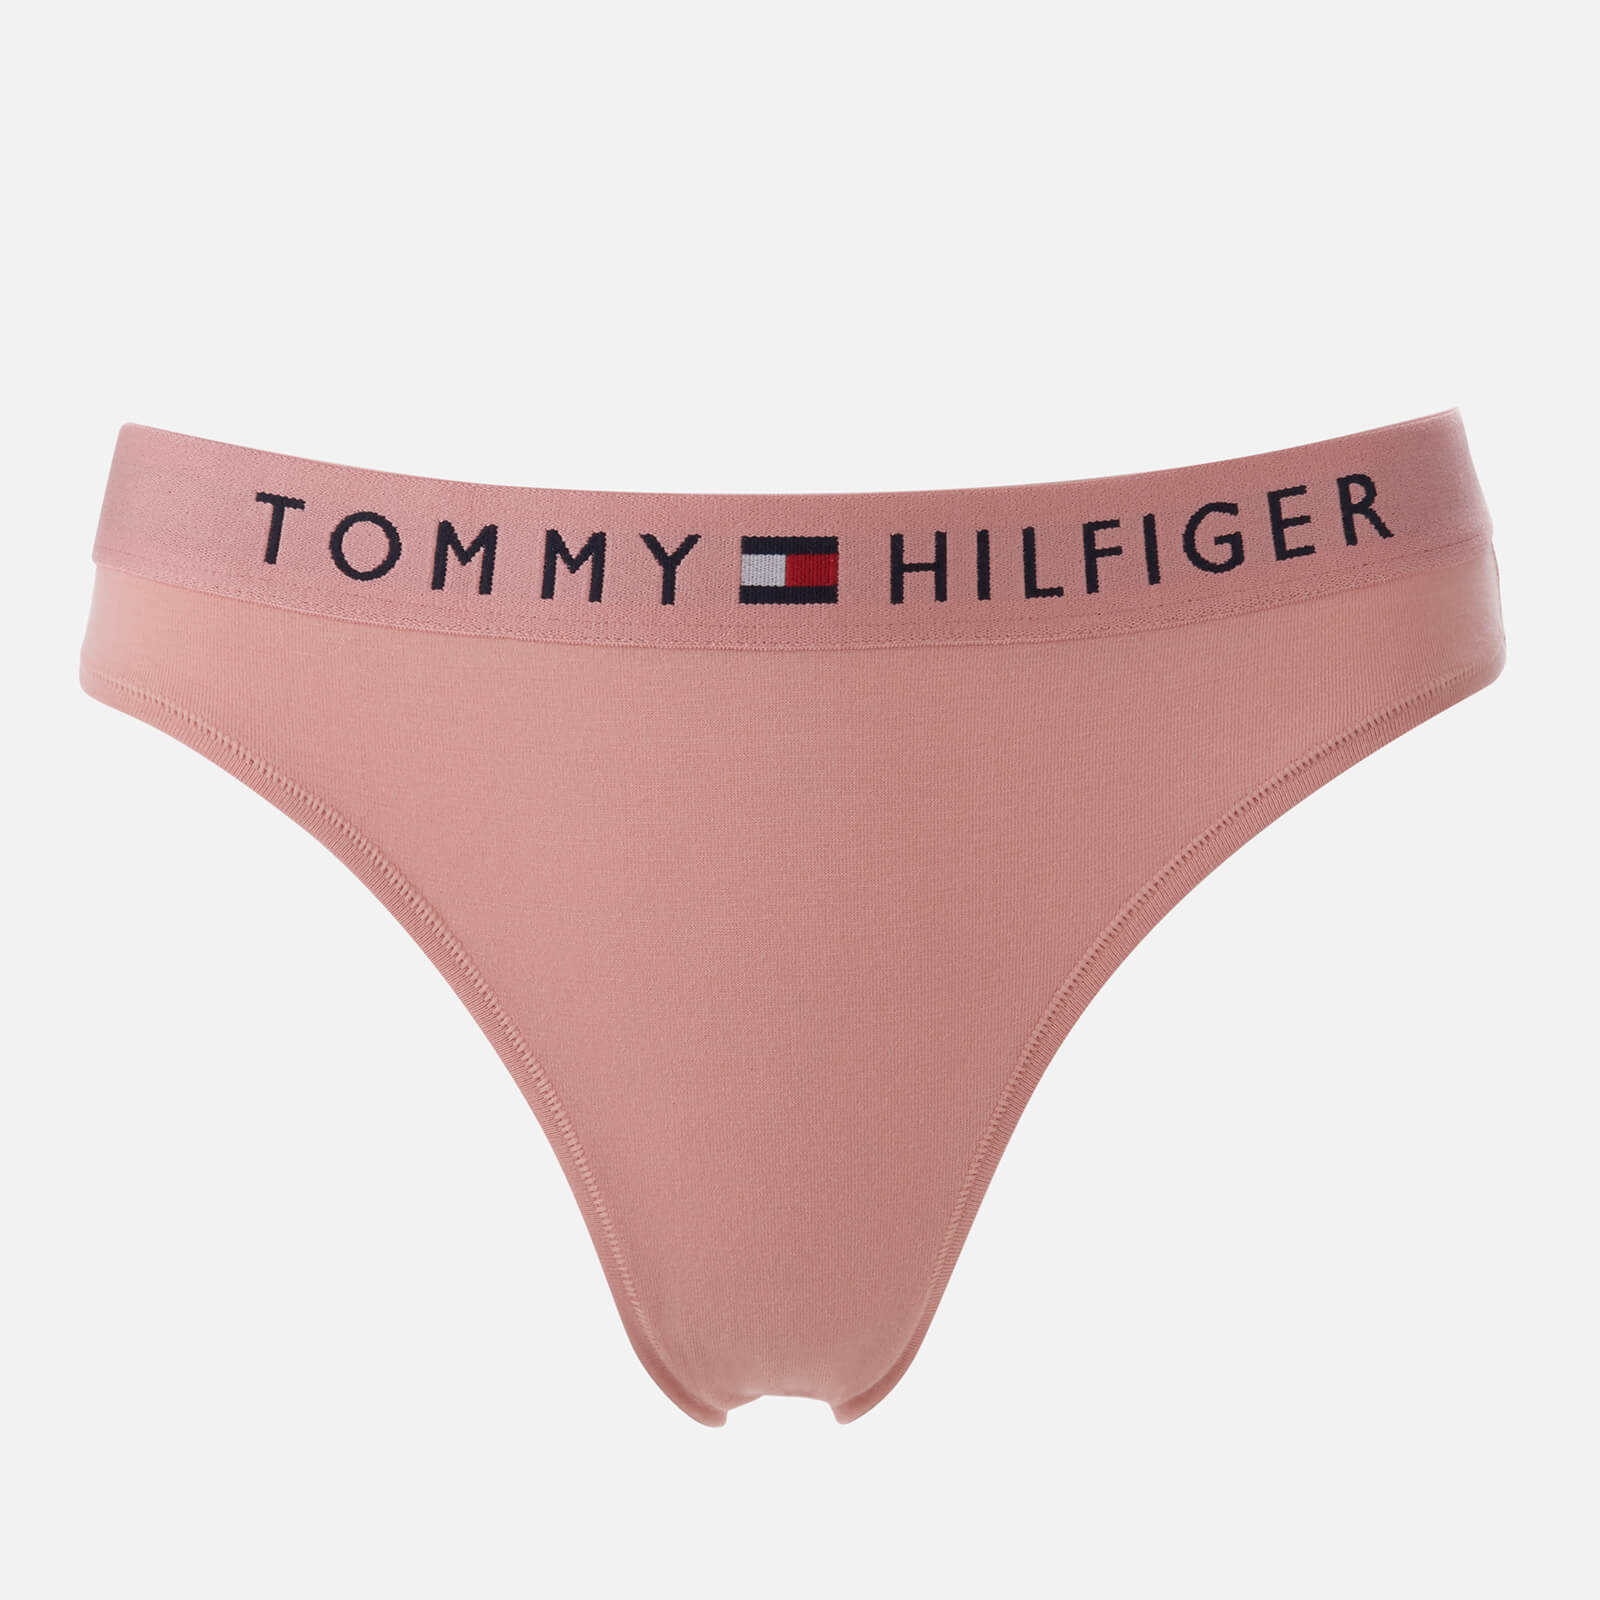 Tommy Hilfiger Women's Bikini Briefs - Rose Tan - S